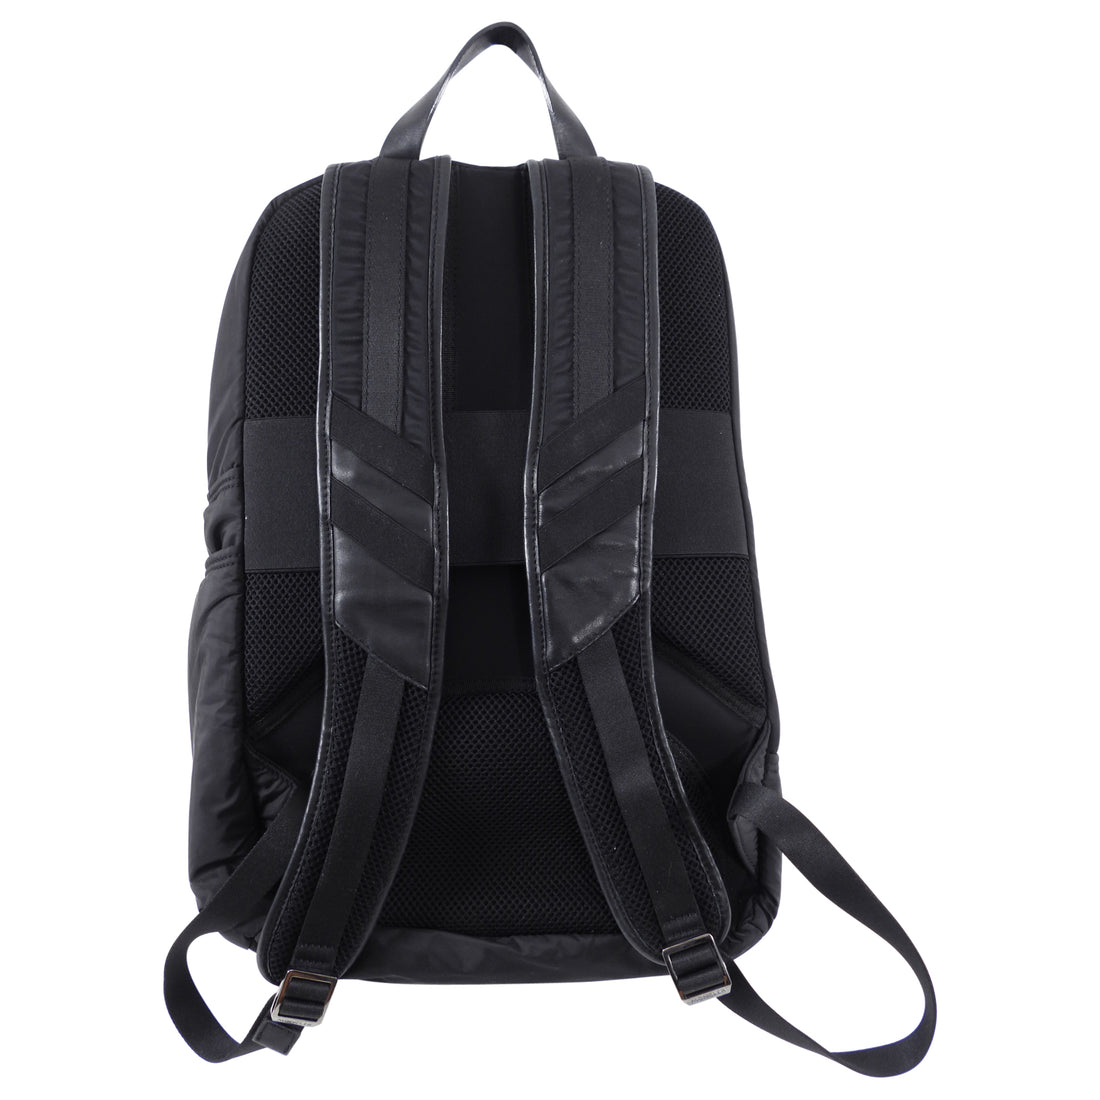 Moncler Black Leather Trimmed Nylon Backpack – I MISS YOU VINTAGE